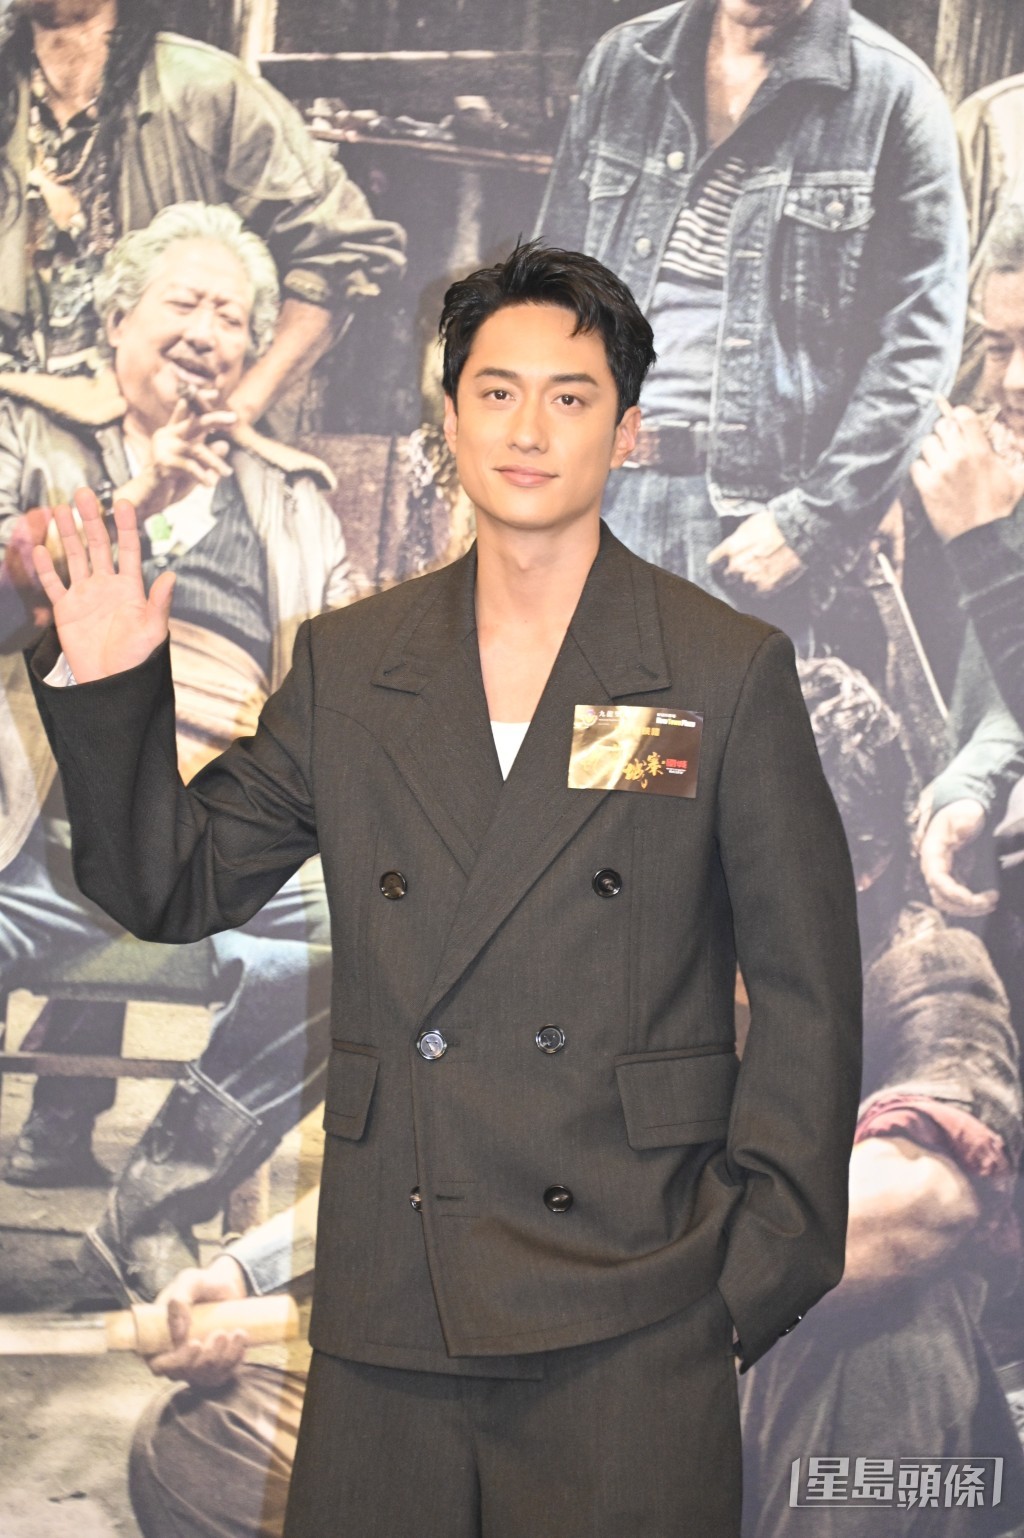 刘俊谦曾凭电影《幻爱》获得香港电影评论学会大奖最佳男主角，也是影帝级人马。